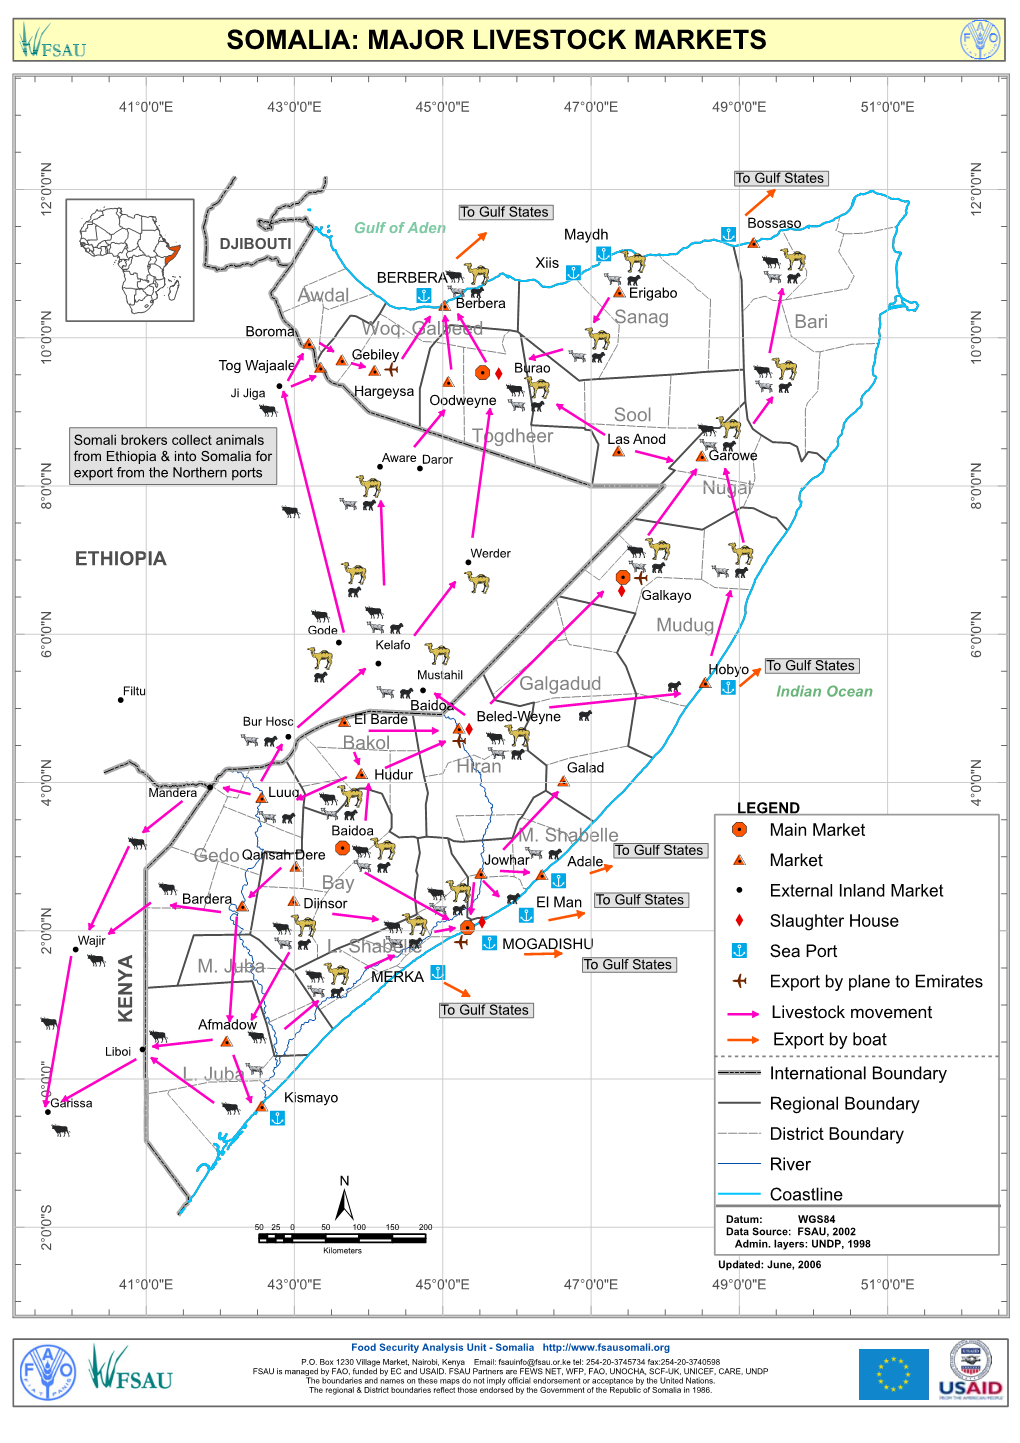 2007 Major Livestock Markets in Somalia